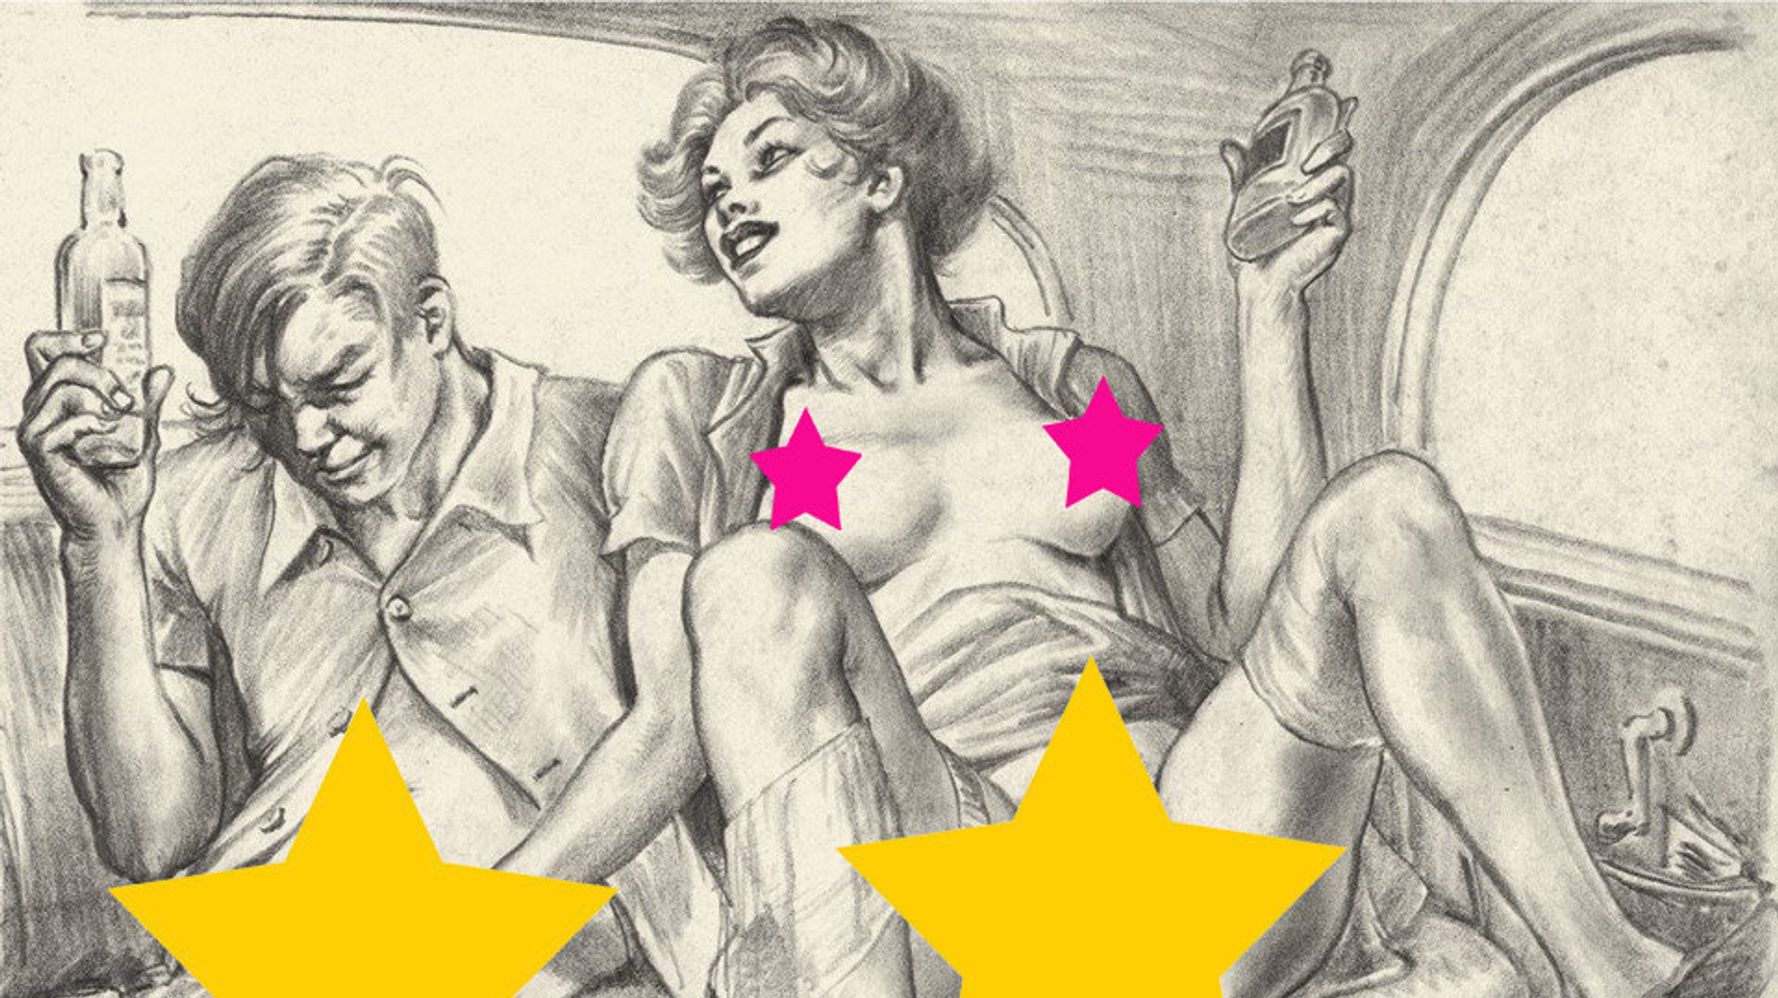 1940s English Porn - The Strange Case Of Thomas Poulton, An Erotic Artist In The 1940s (NSFW) |  HuffPost Entertainment